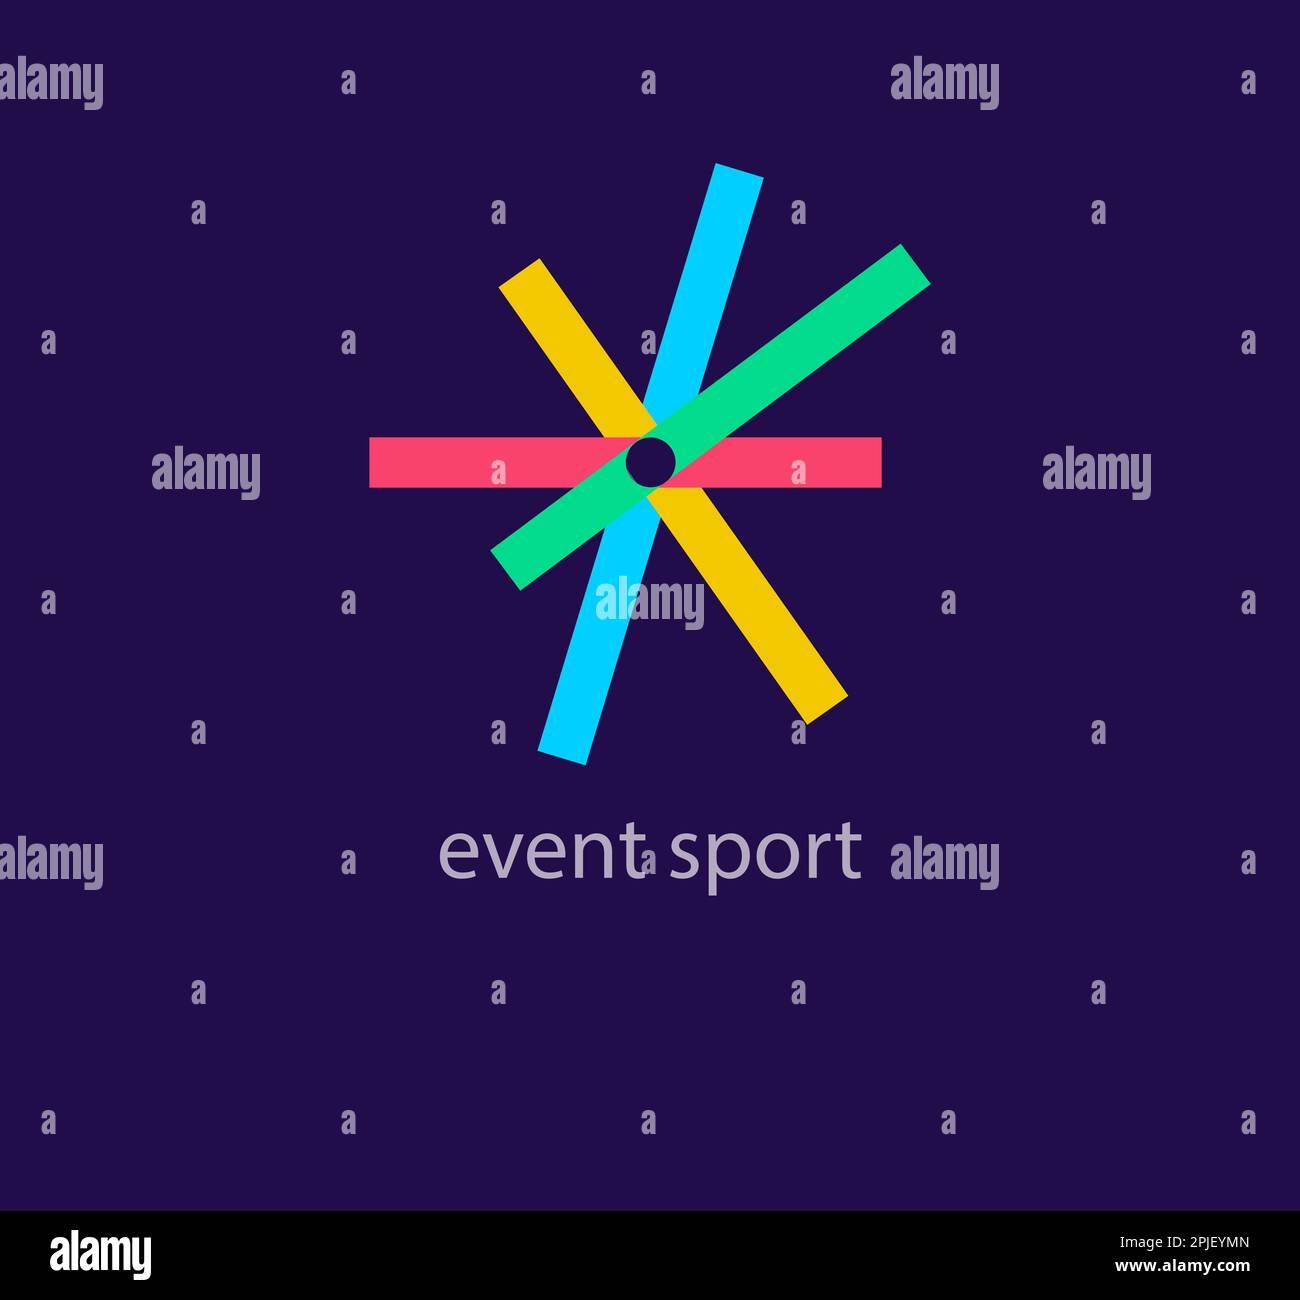 Logo Activity Sports Bar. Transizioni di colore uniche nel design. Modello di logo con barre geometriche creative. vettore. Illustrazione Vettoriale